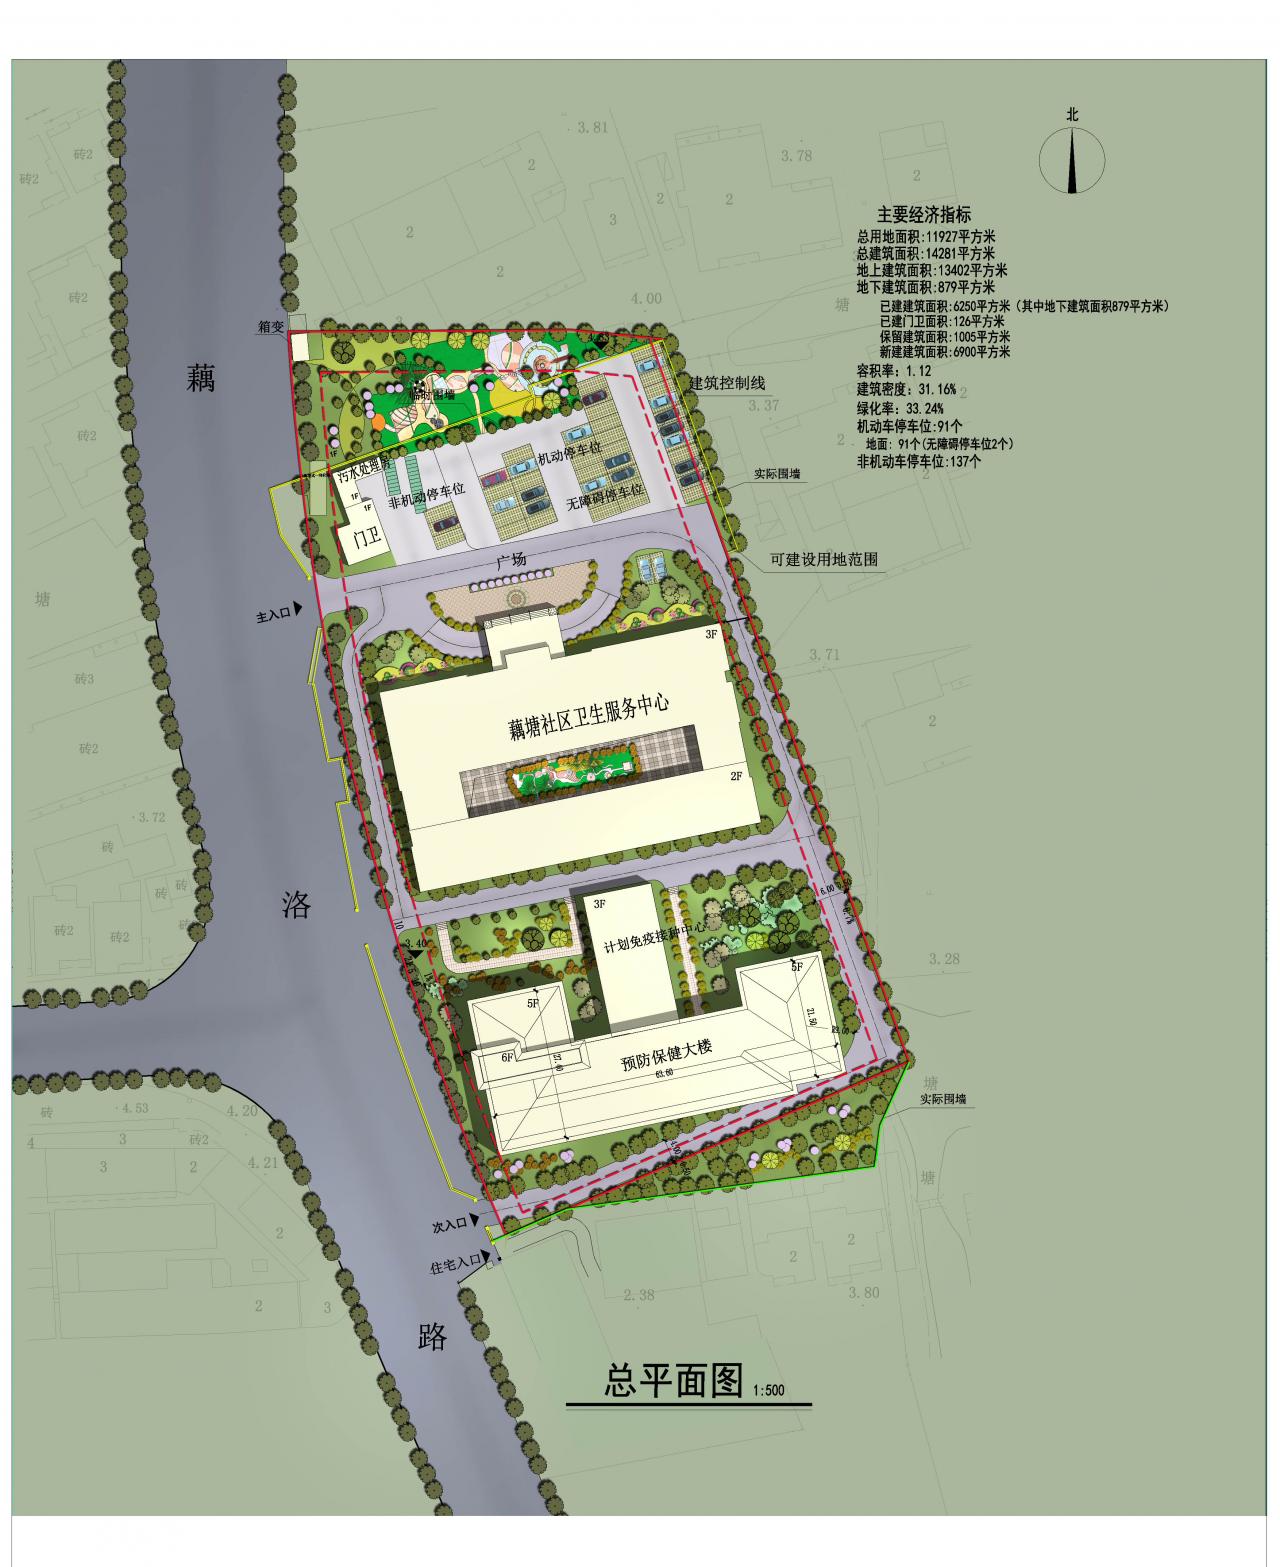 藕塘社区卫生服务中心预防保健大楼工程项目规划设计方案审查批前公示